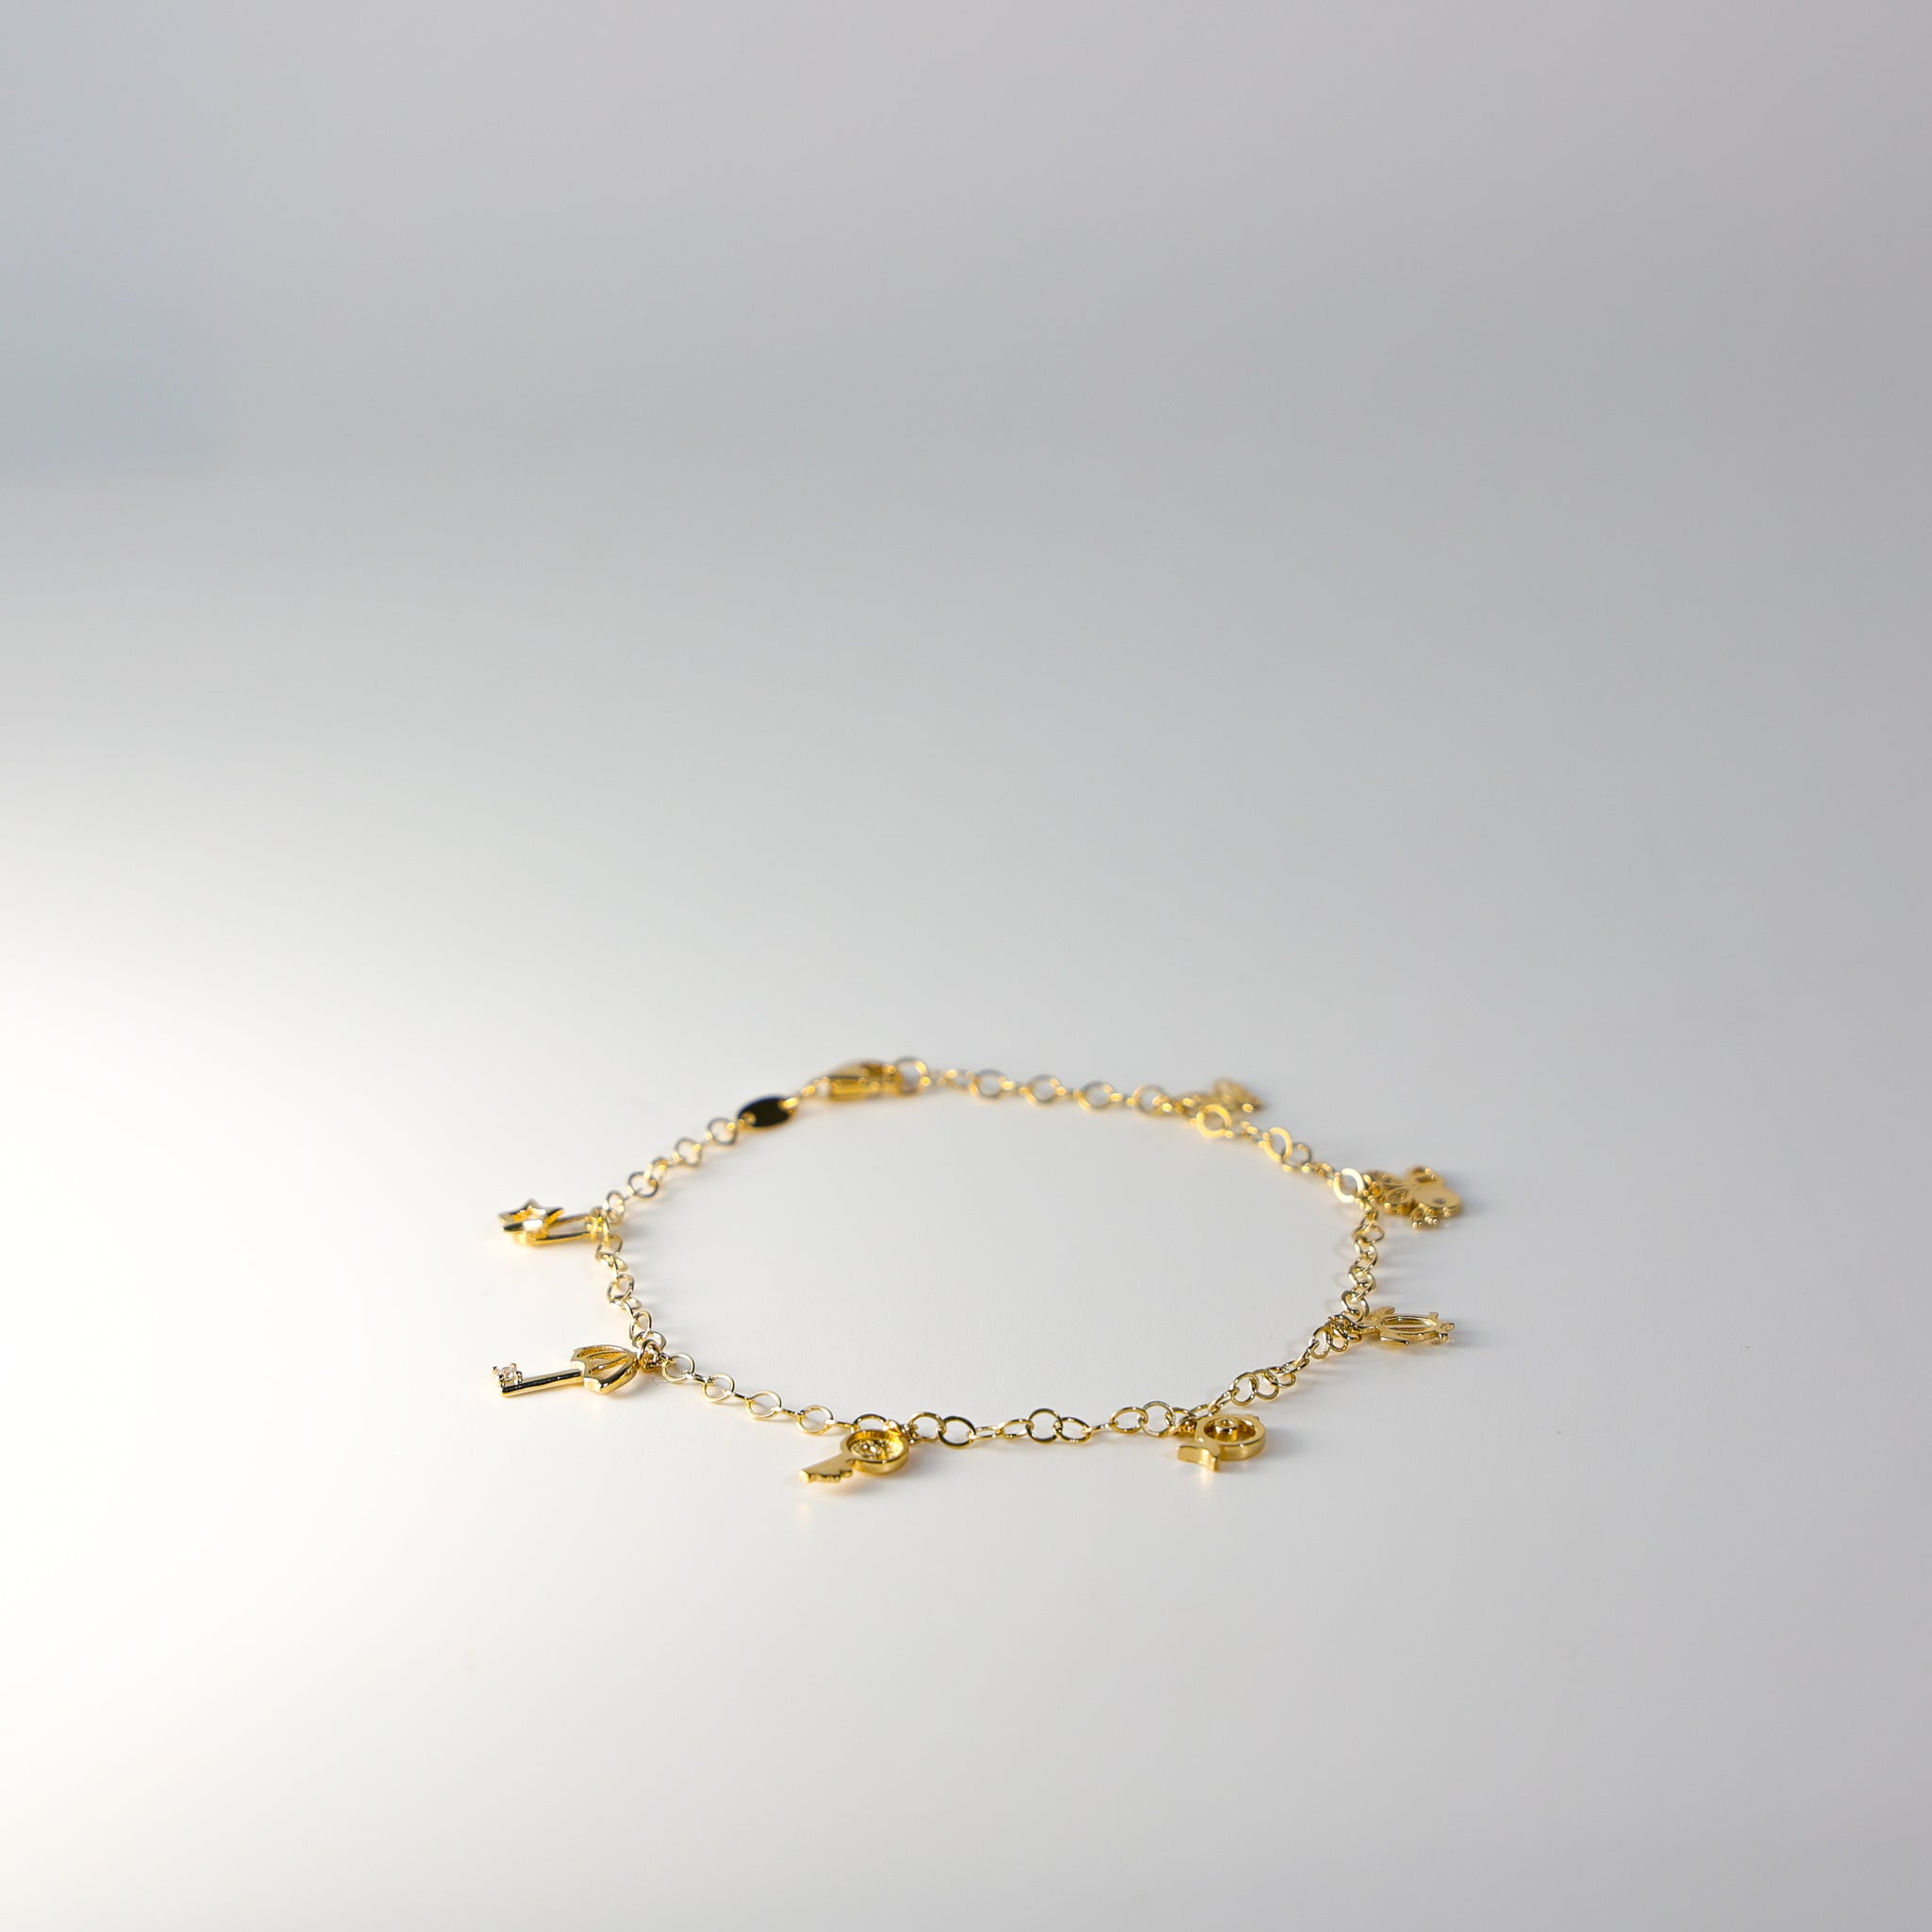 Buy 14K Gold Dangling Leaf Bracelet, Leaf Charm Bracelet, Coin Charm Chain Bracelet  Jewelry Online in India - Etsy